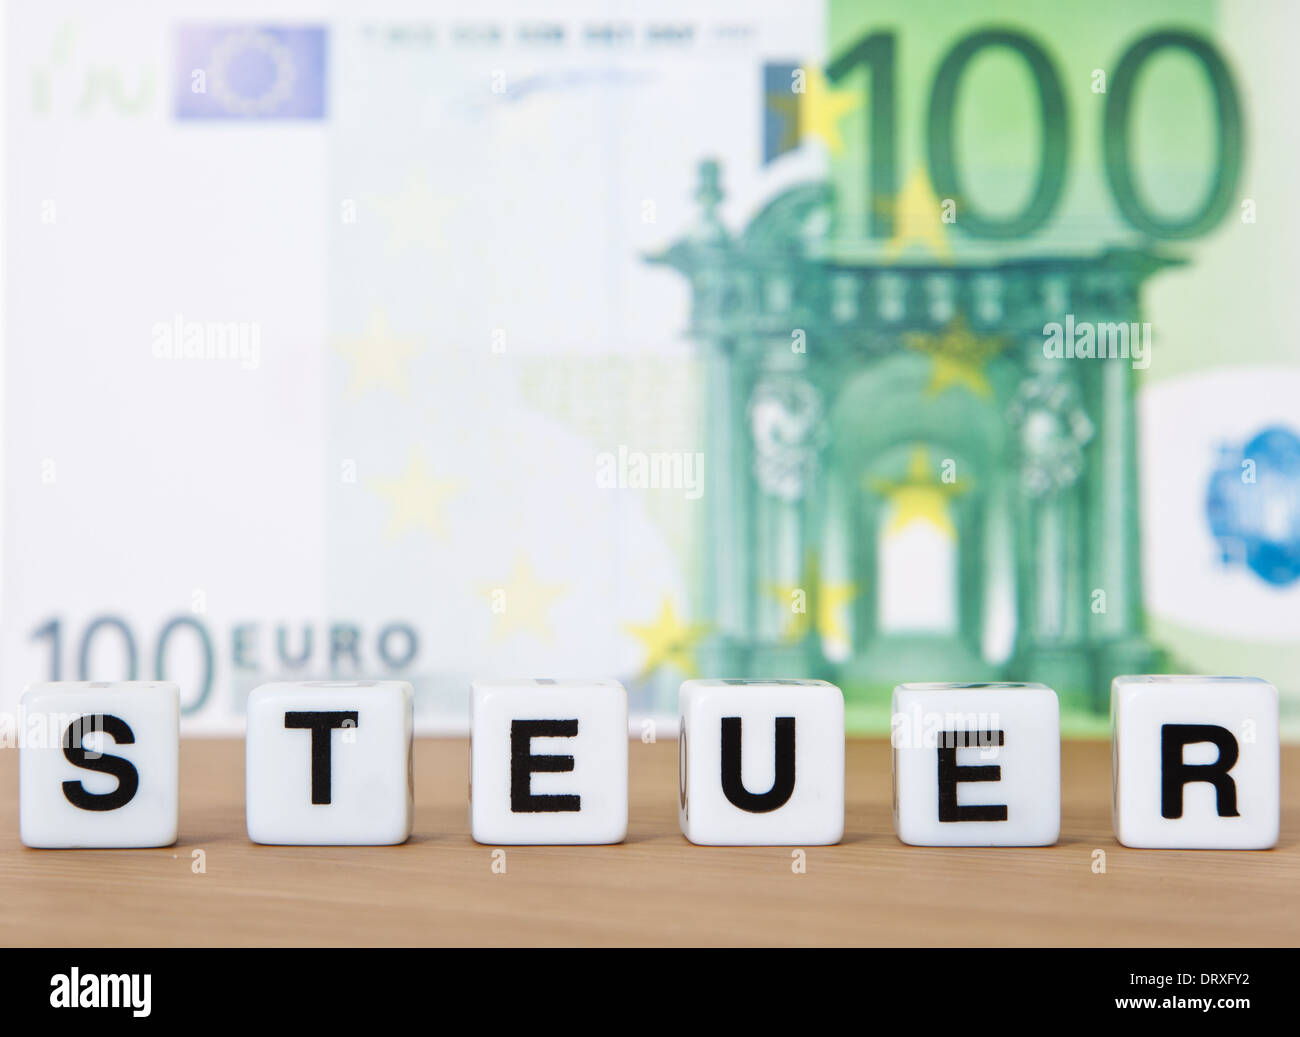 El término alemán Steuer impuesto (en inglés) en la parte delantera del billete de 100 euros. Foto de stock